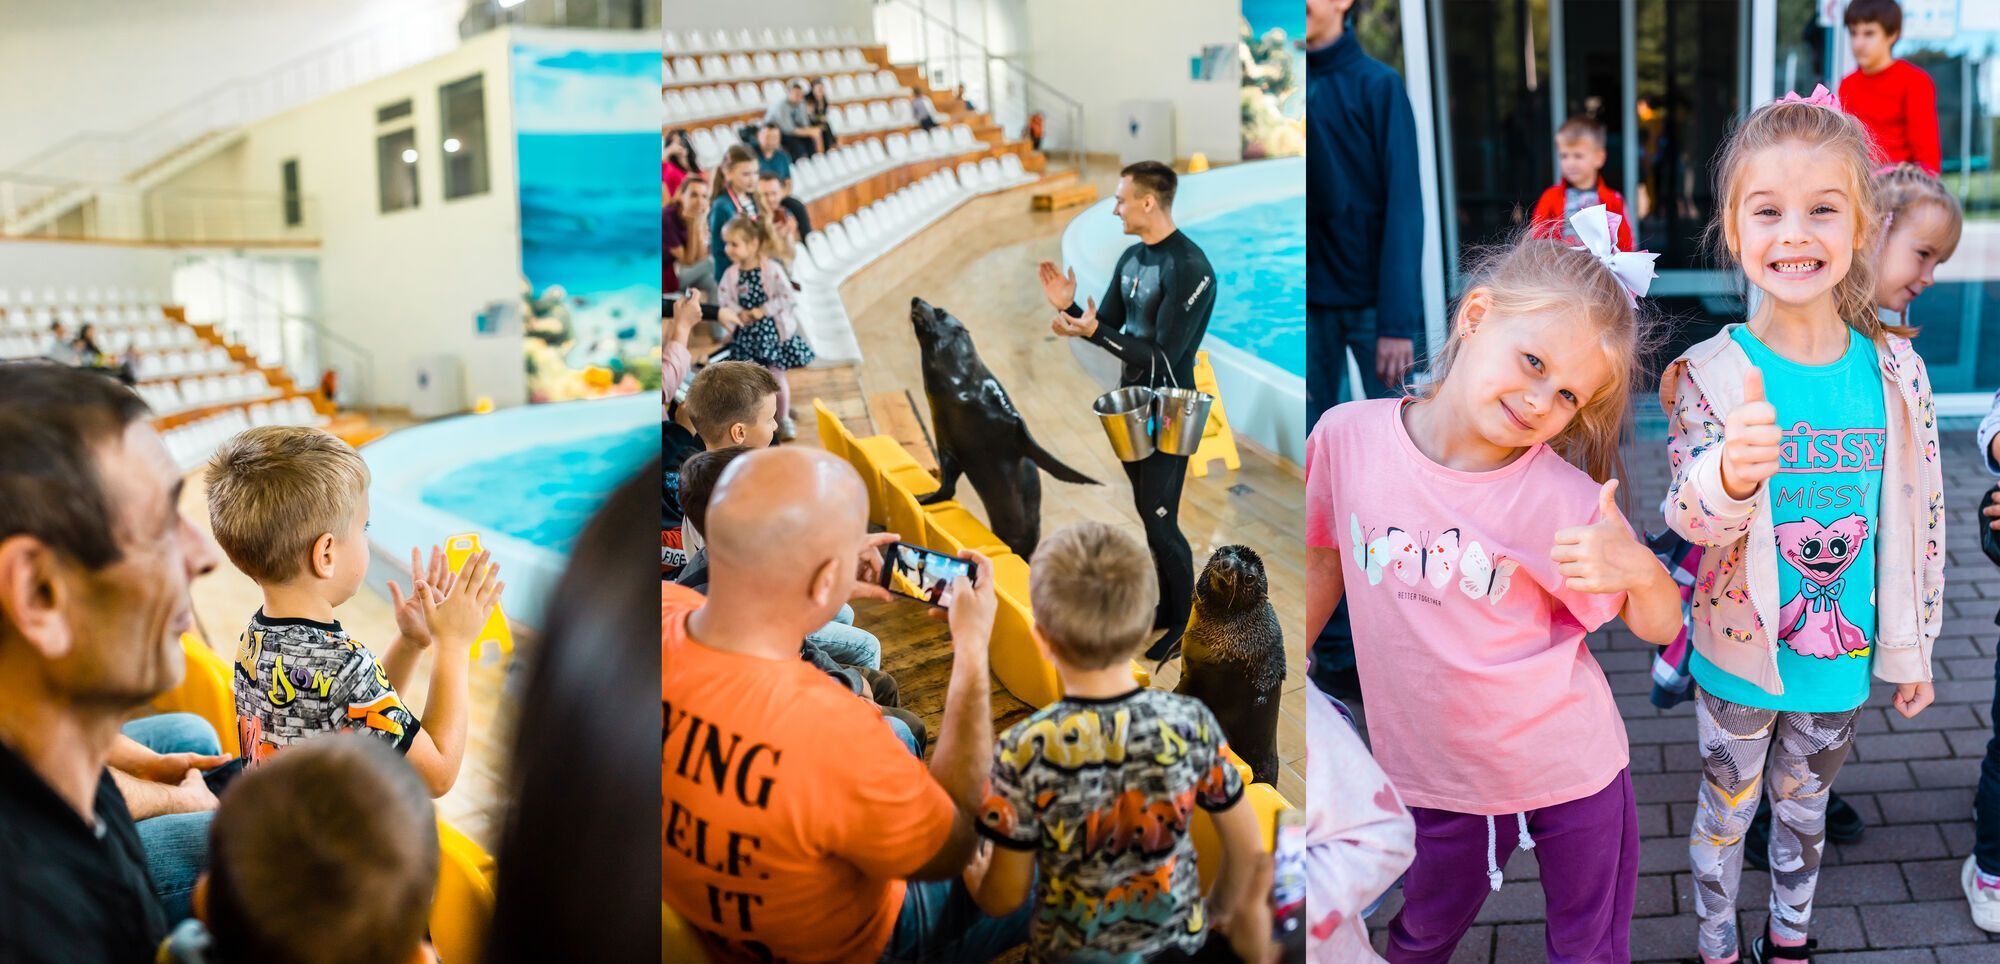 Емоції зашкалюють: волонтери влаштували дітям переселенців похід на виставу в дельфінарій